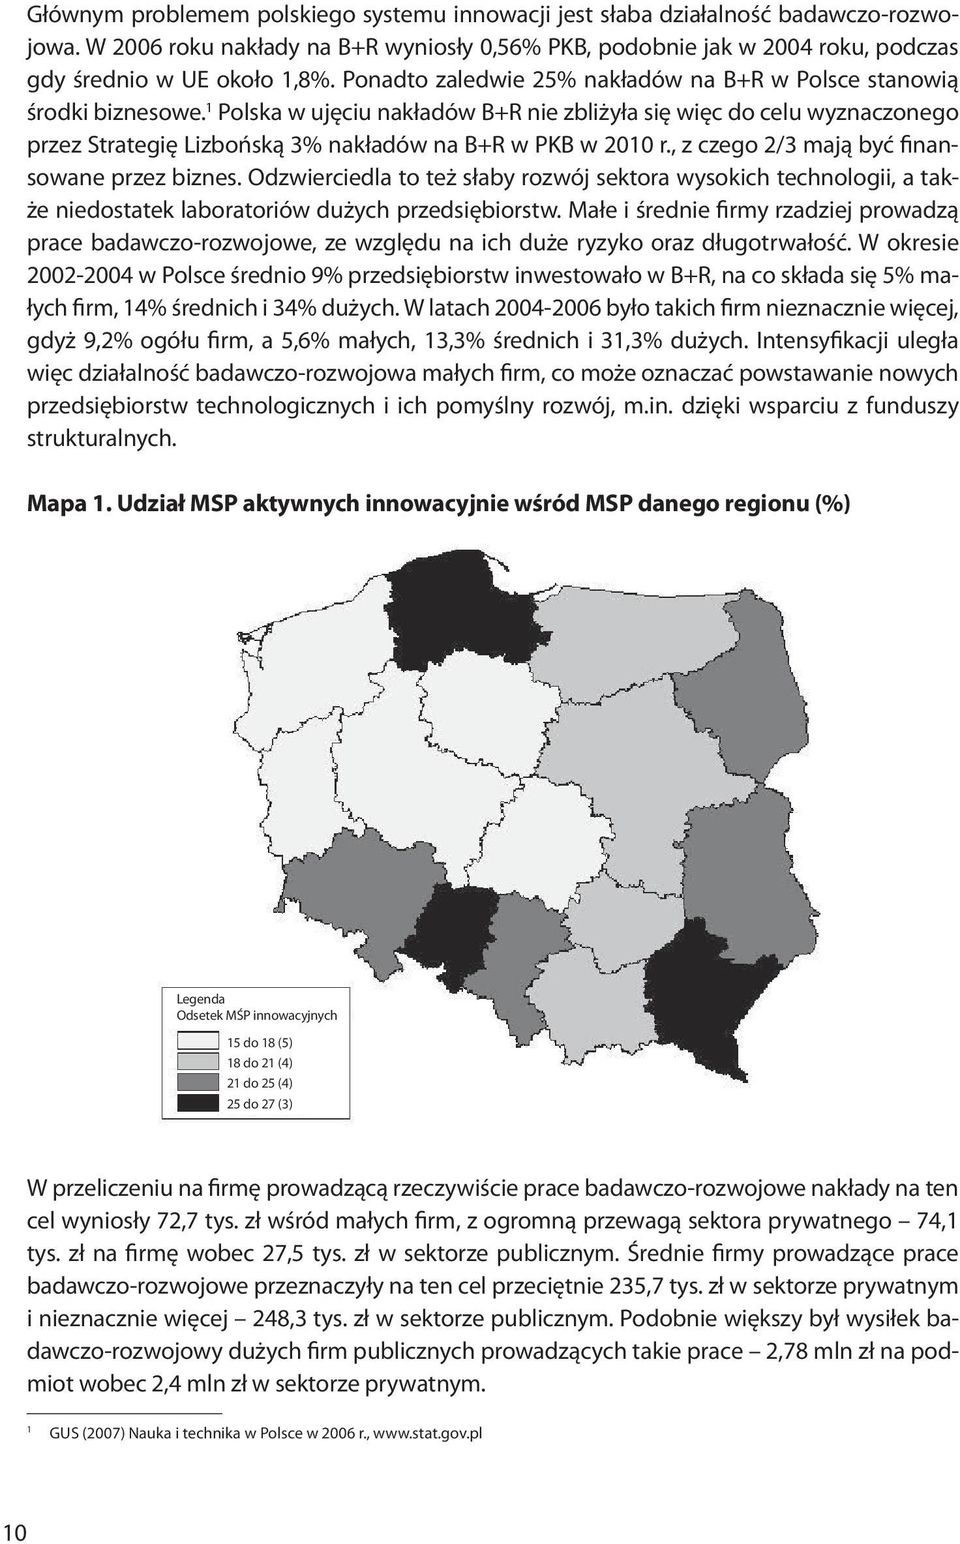 1 Polska w ujęciu nakładów B+R nie zbliżyła się więc do celu wyznaczonego przez Strategię Lizbońską 3% nakładów na B+R w PKB w 2010 r., z czego 2/3 mają być finansowane przez biznes.